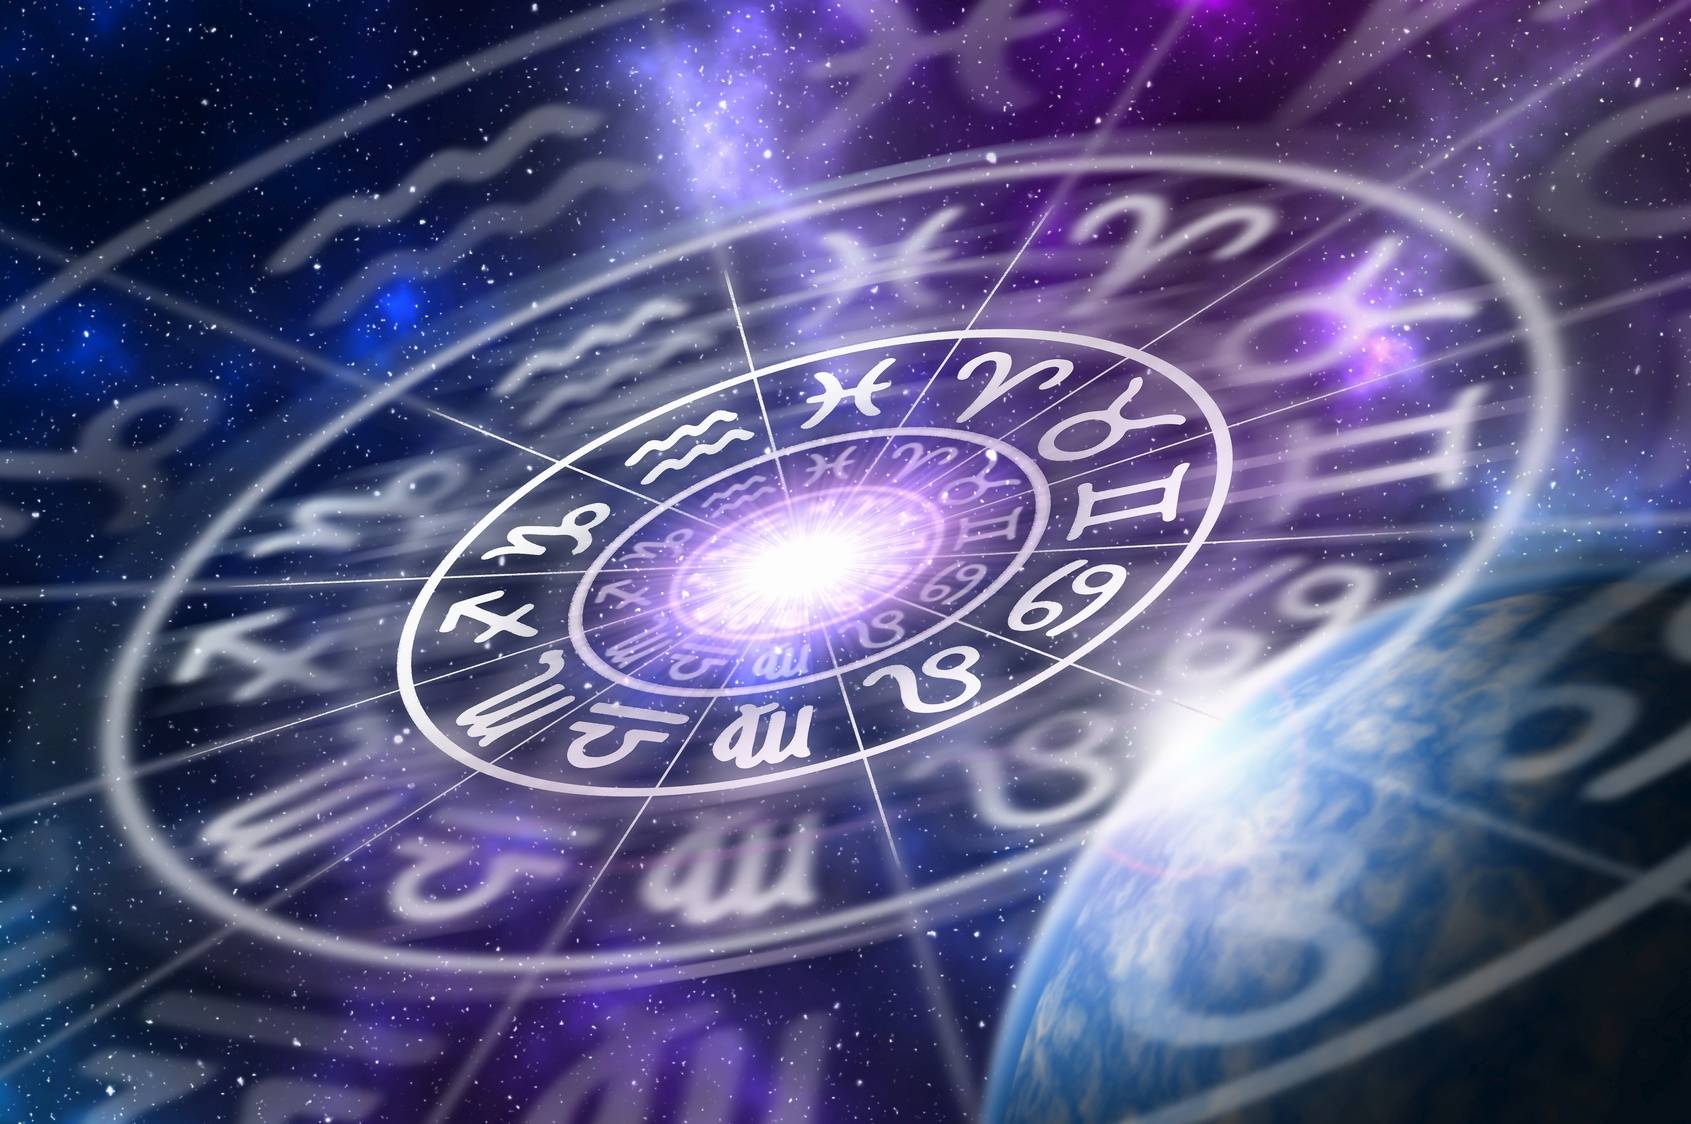 Astrologia w medycynie i filozofii chińskiej. Horoskop ze znakami zodiaku na fioletowo-granatowym tle.